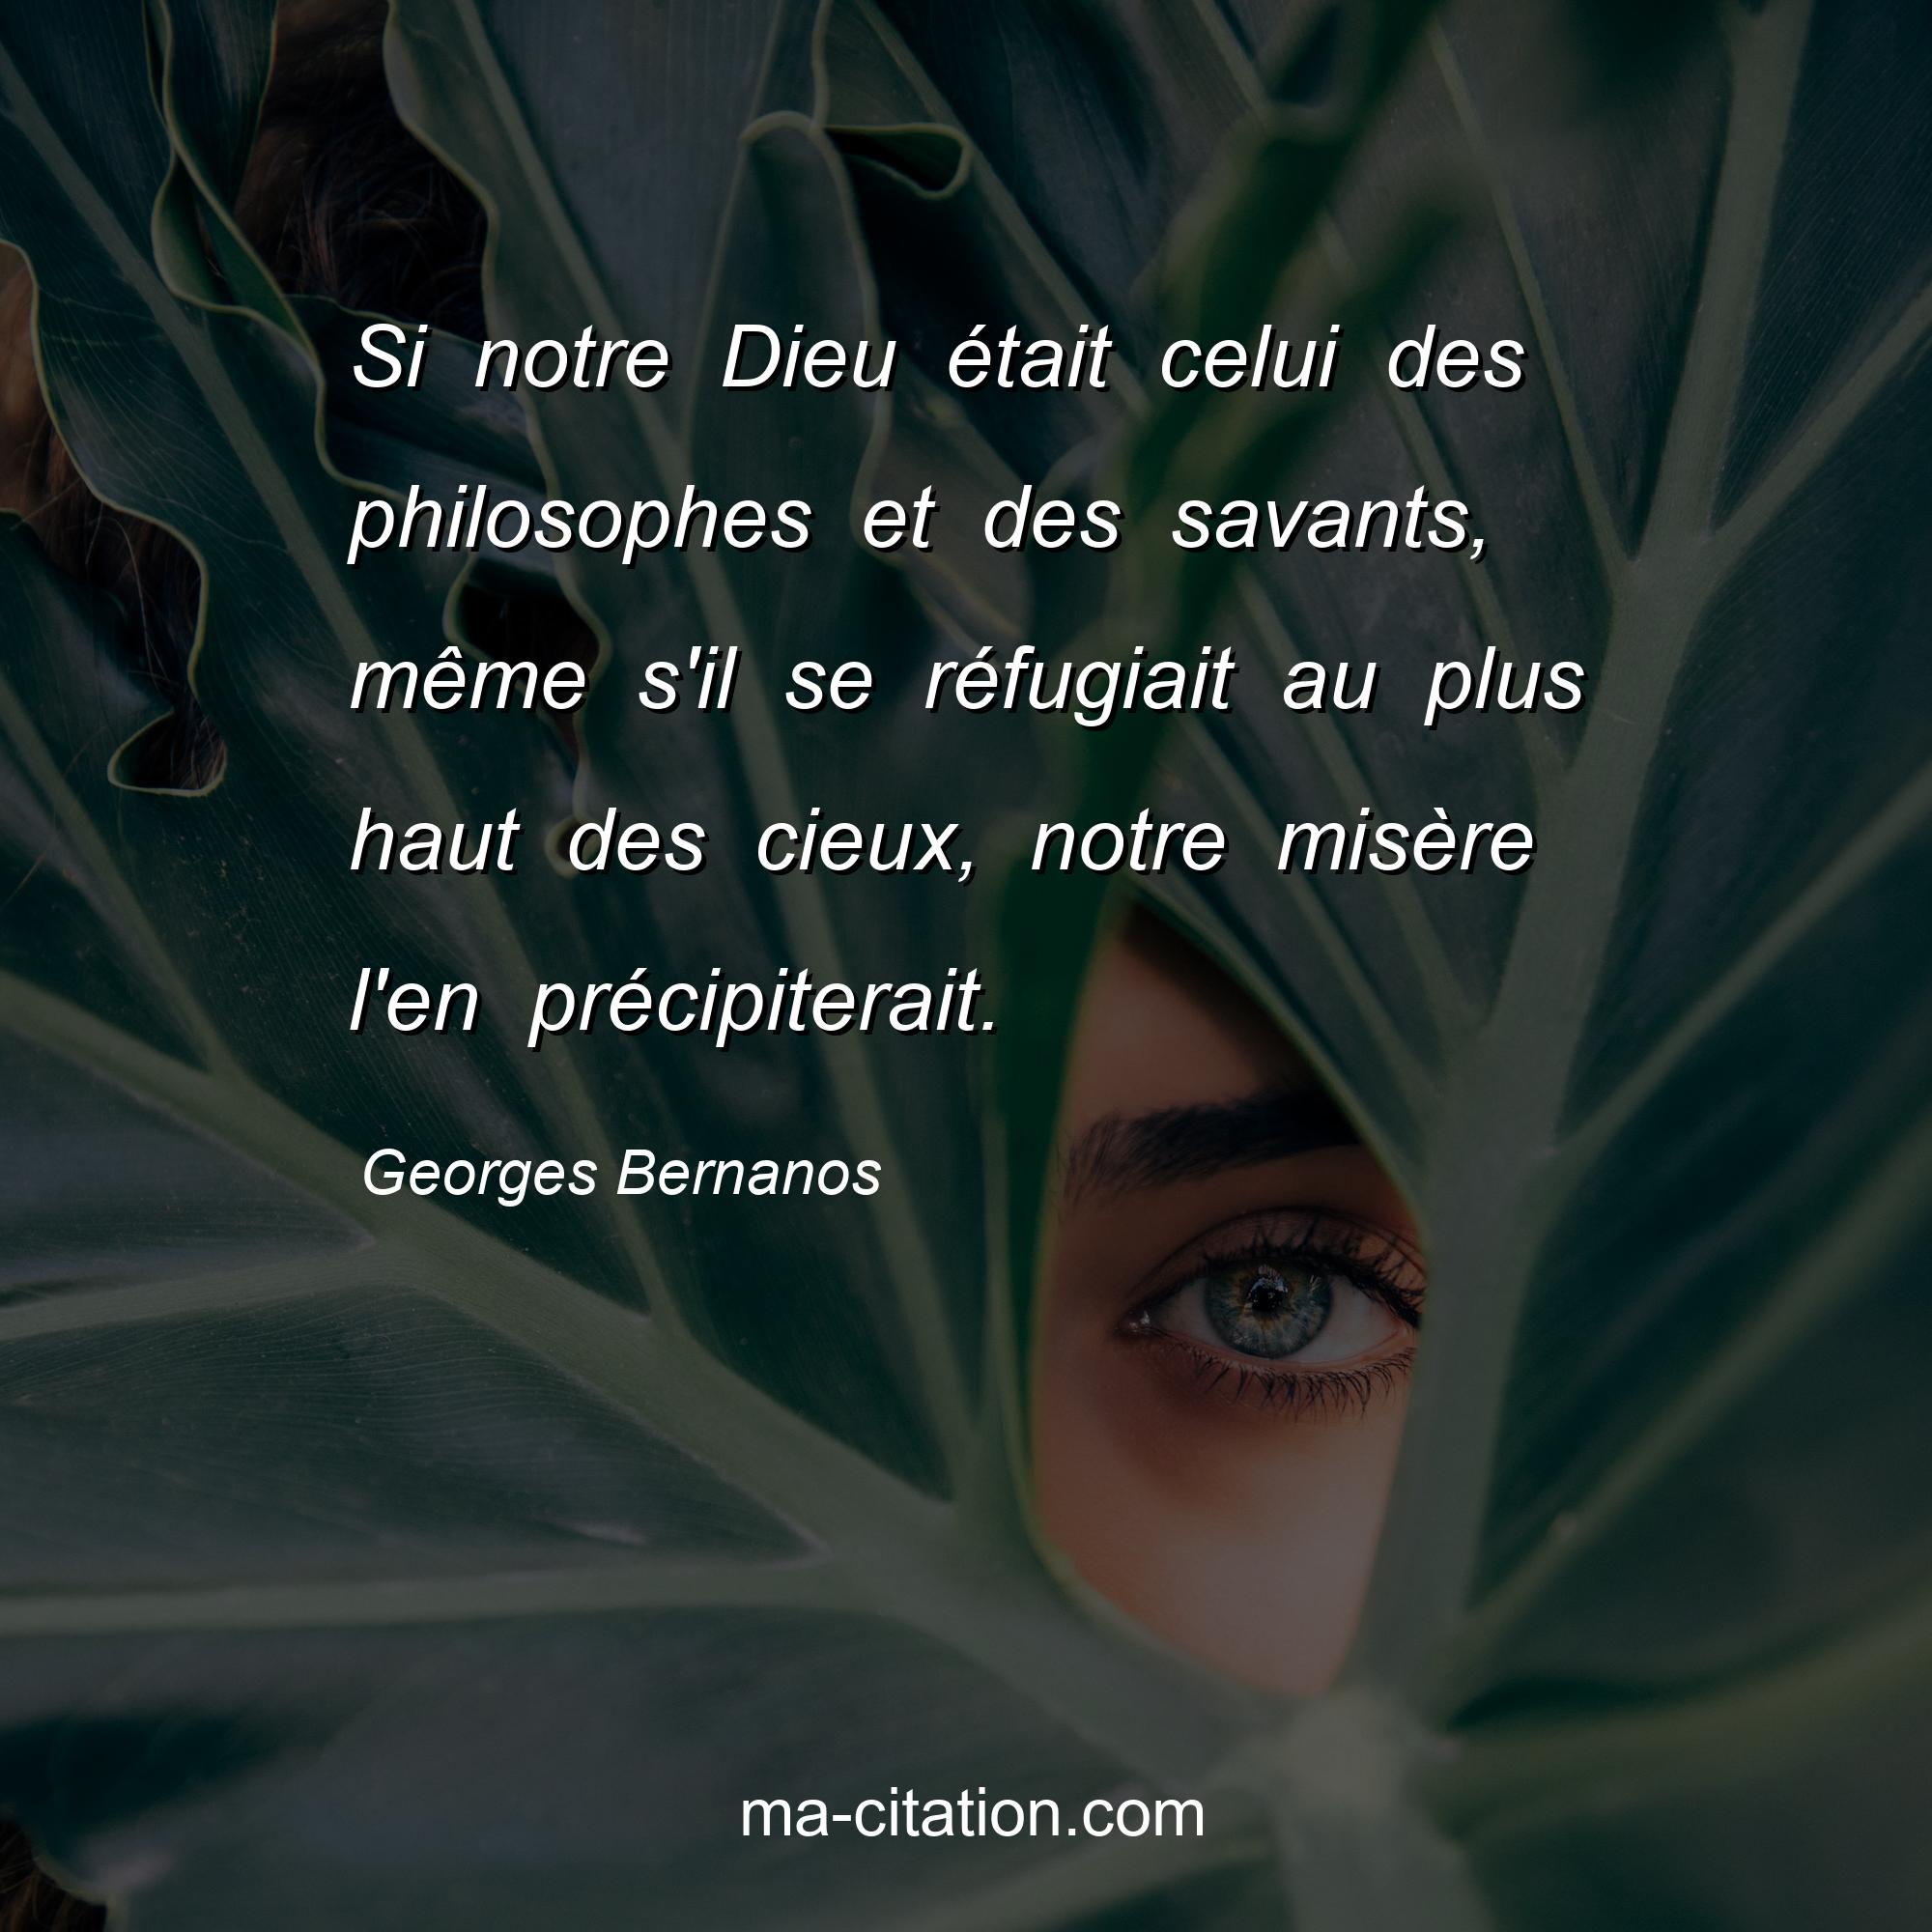 Georges Bernanos : Si notre Dieu était celui des philosophes et des savants, même s'il se réfugiait au plus haut des cieux, notre misère l'en précipiterait.